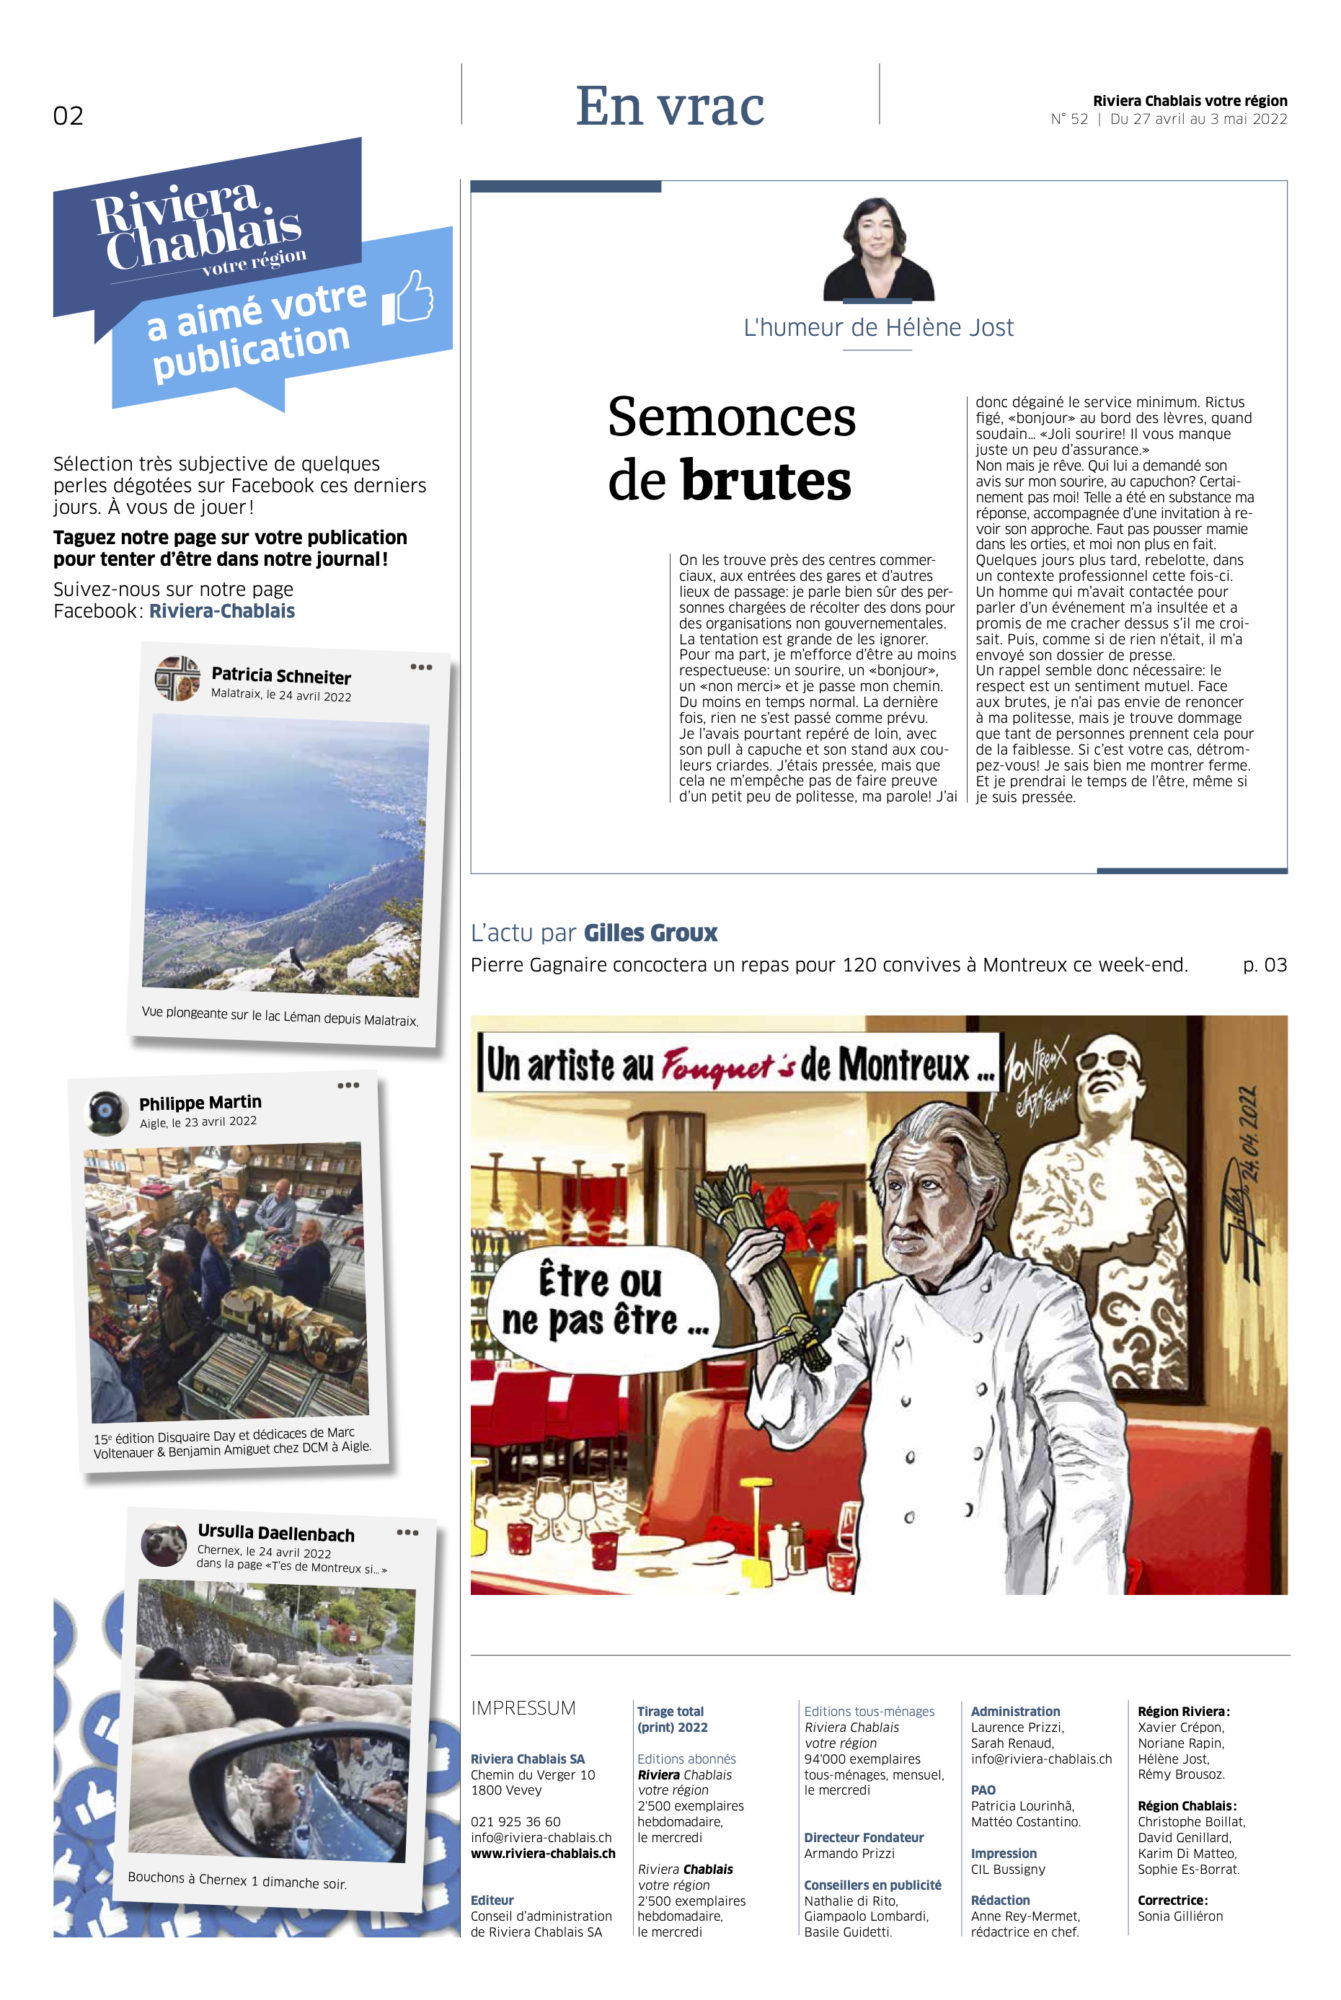 Journal Chablais n° 52 ©Dessin de Gilles,, du Chef Gagnaire dans le restaurant Fouquet's de Montreux pour article Dans un plat, on doit retrouver la tendresse du cuisinier du 27 avril 2022 page 2